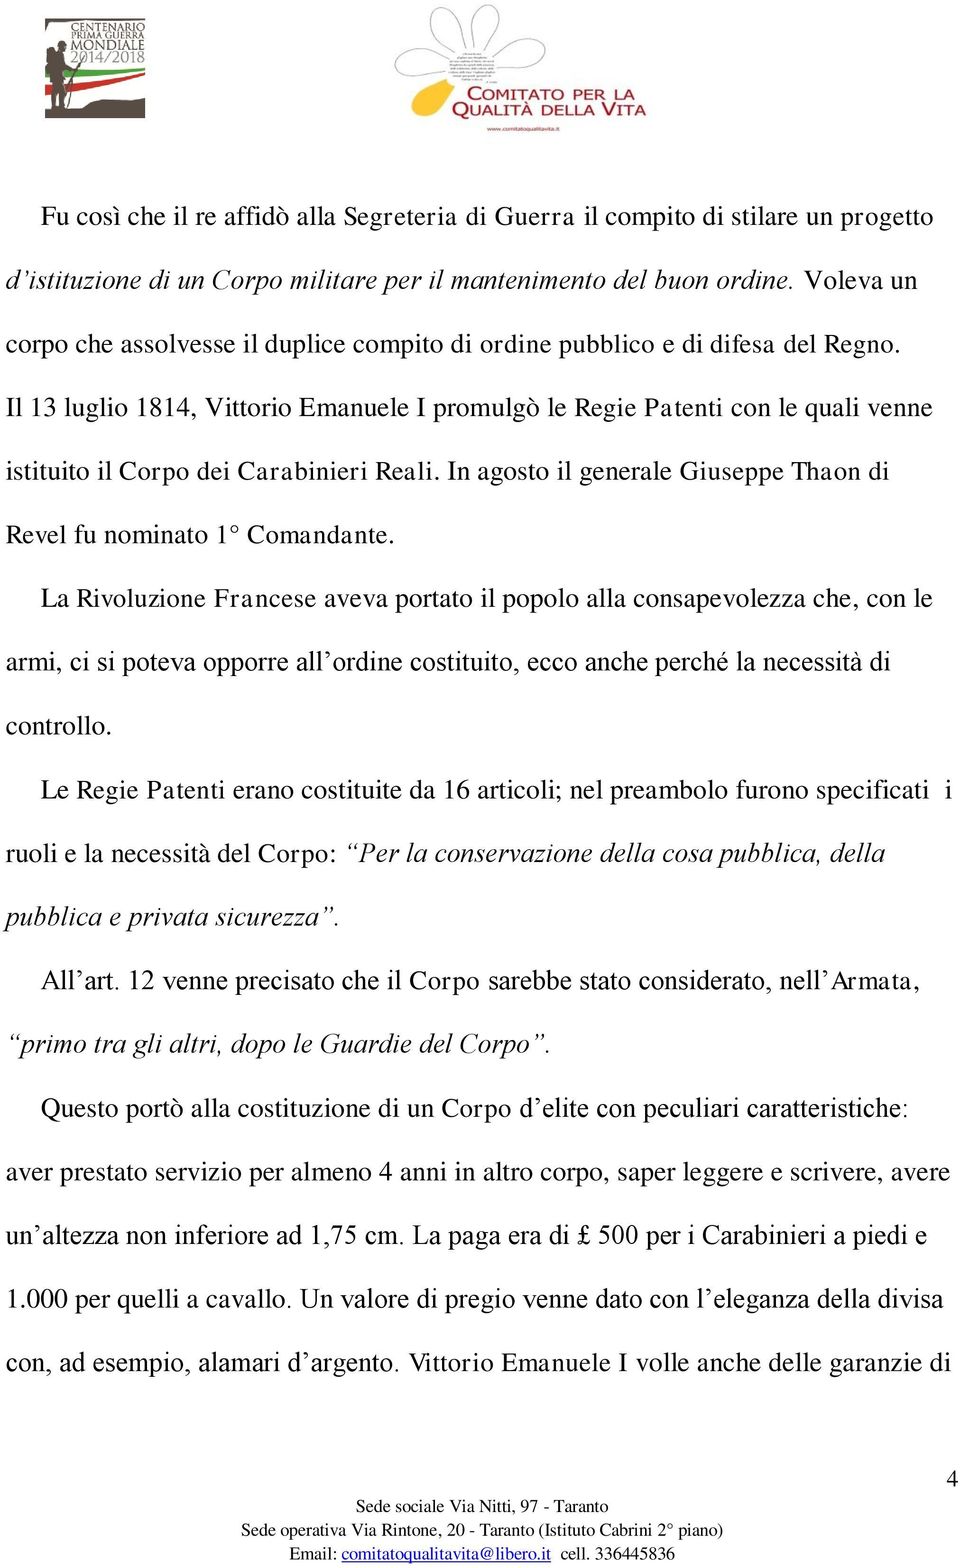 Il 13 luglio 1814, Vittorio Emanuele I promulgò le Regie Patenti con le quali venne istituito il Corpo dei Carabinieri Reali. In agosto il generale Giuseppe Thaon di Revel fu nominato 1 Comandante.